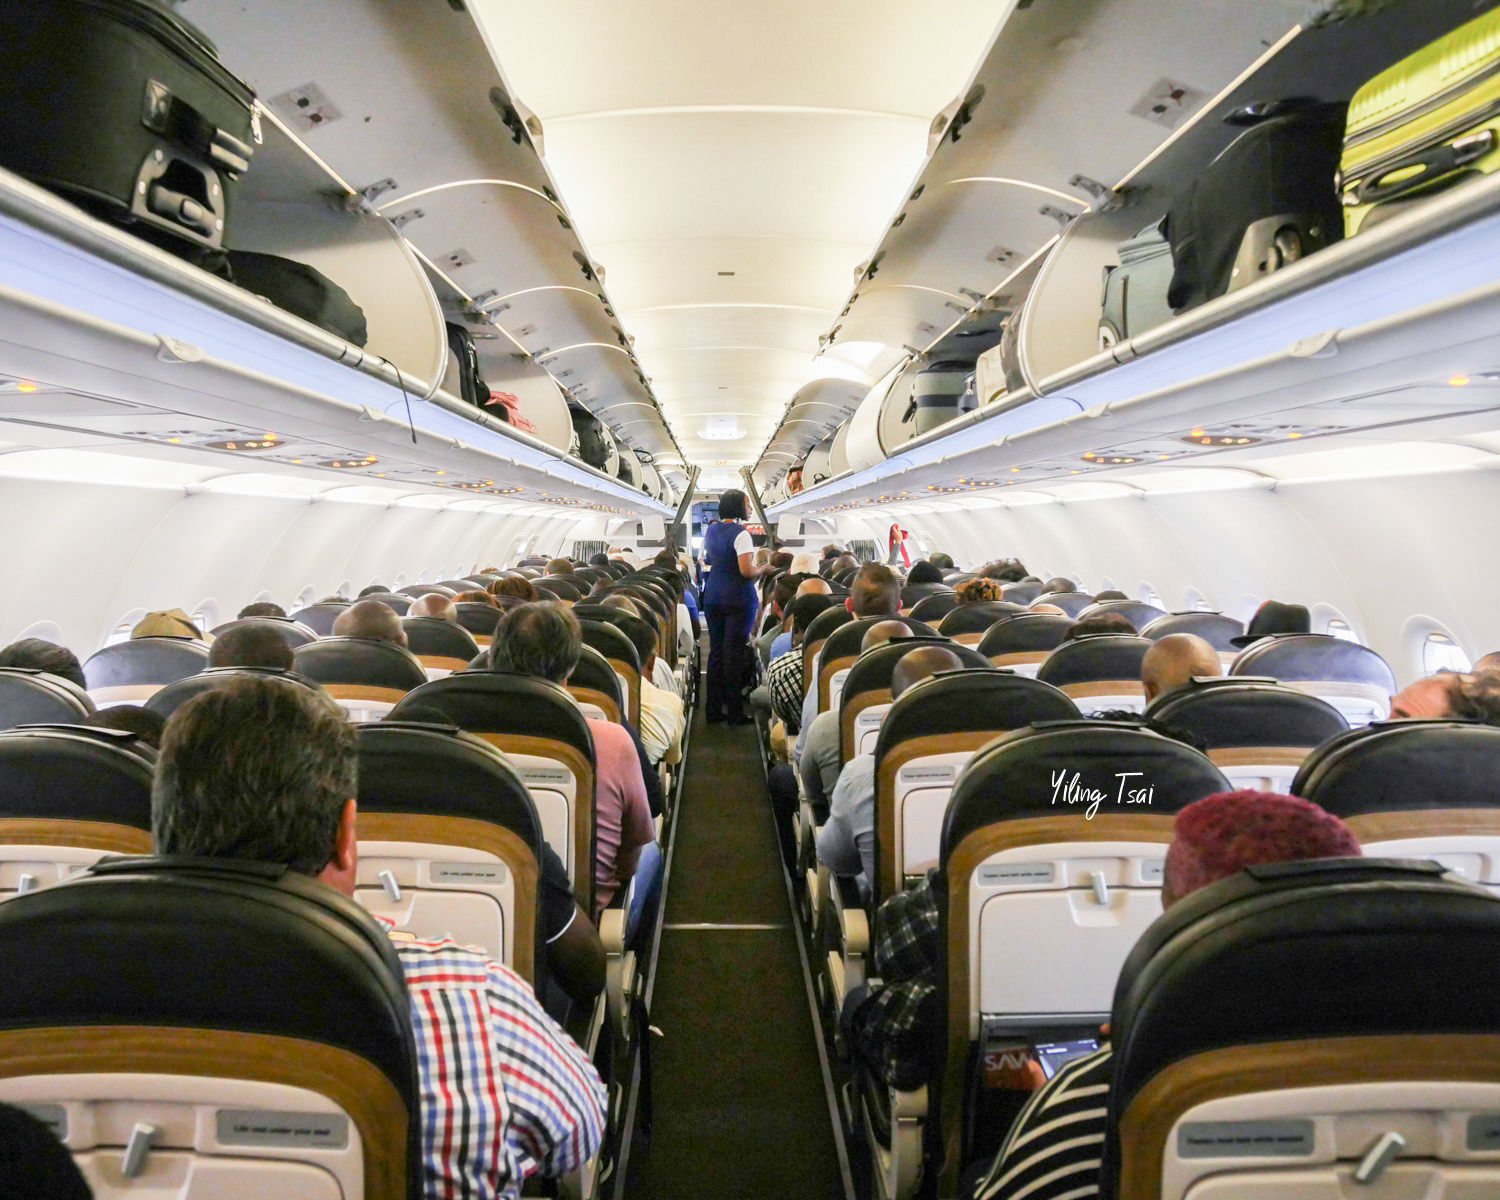 南非航空經濟艙 南非轉機辛巴威航線 搭乘經驗分享